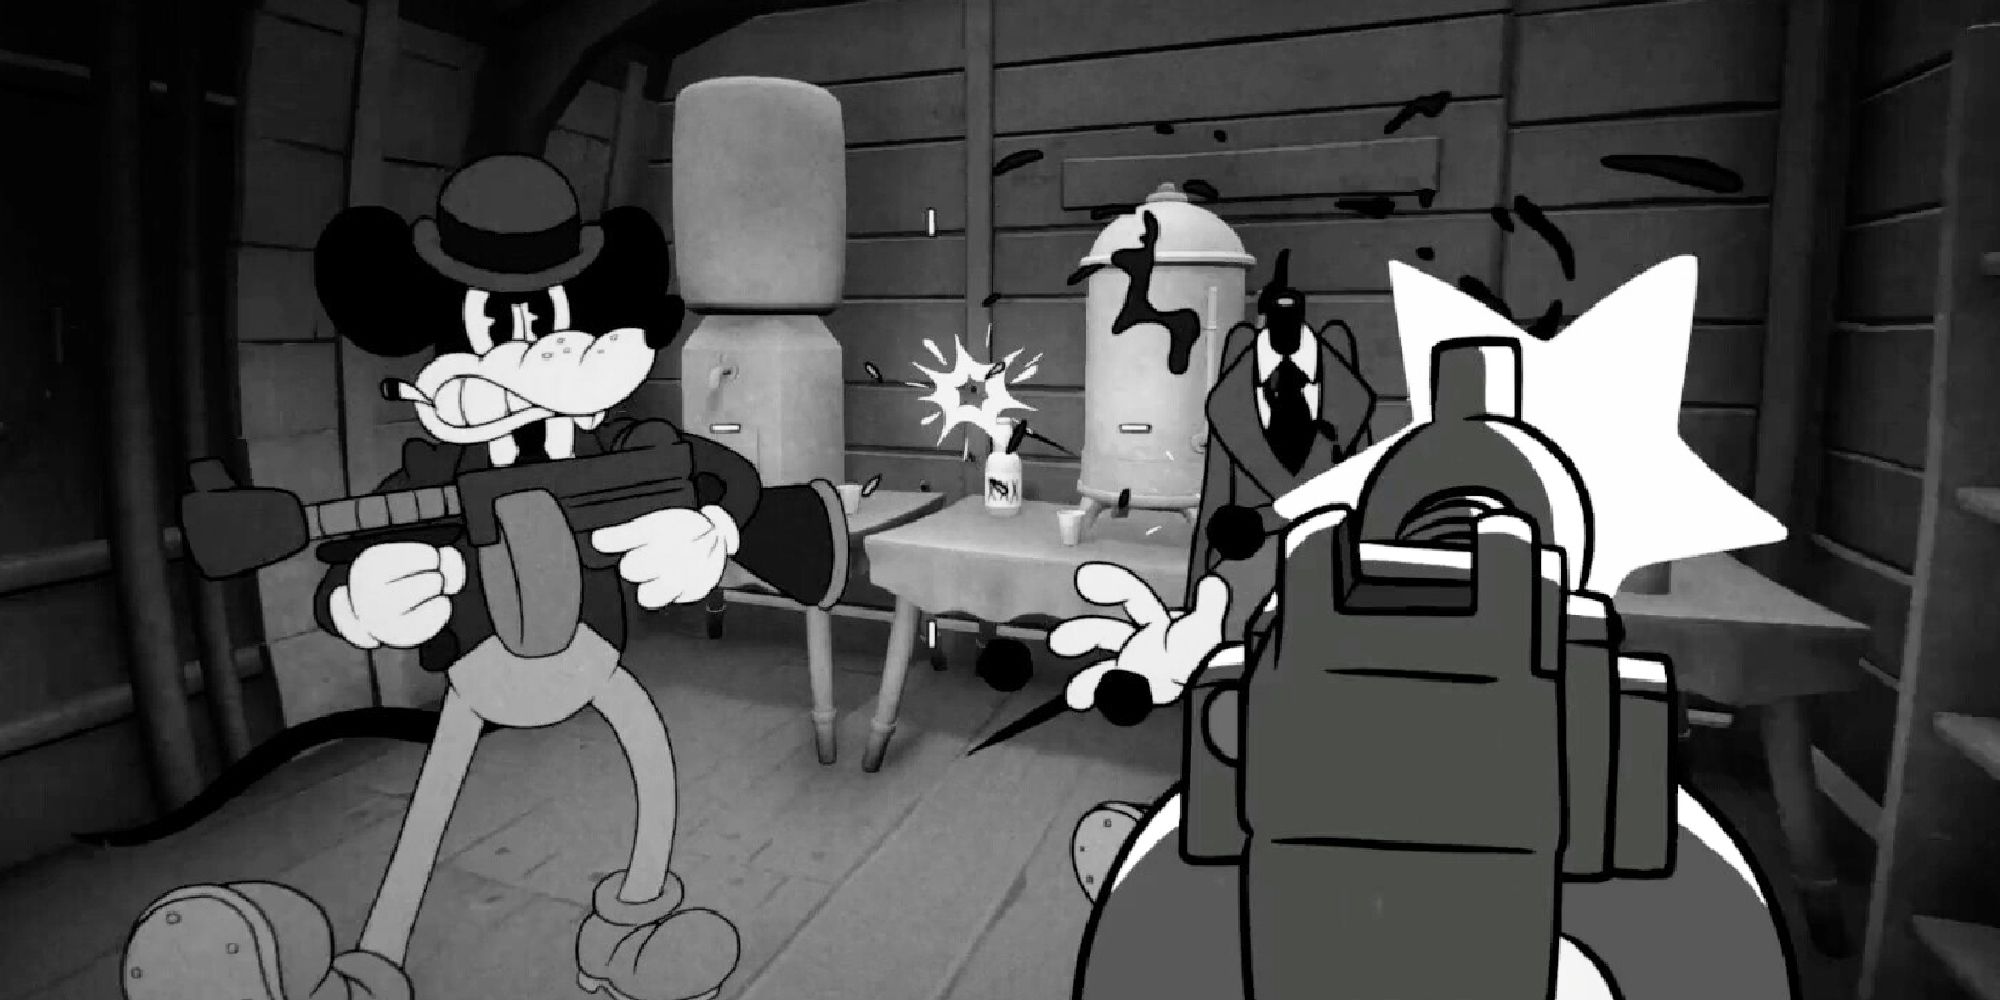 Maus-Gameplay, FPS, der mit einer Maschinenpistole auf klassische Mickey-Mouse-Charaktere im Steamboat-Willie-Stil schießt